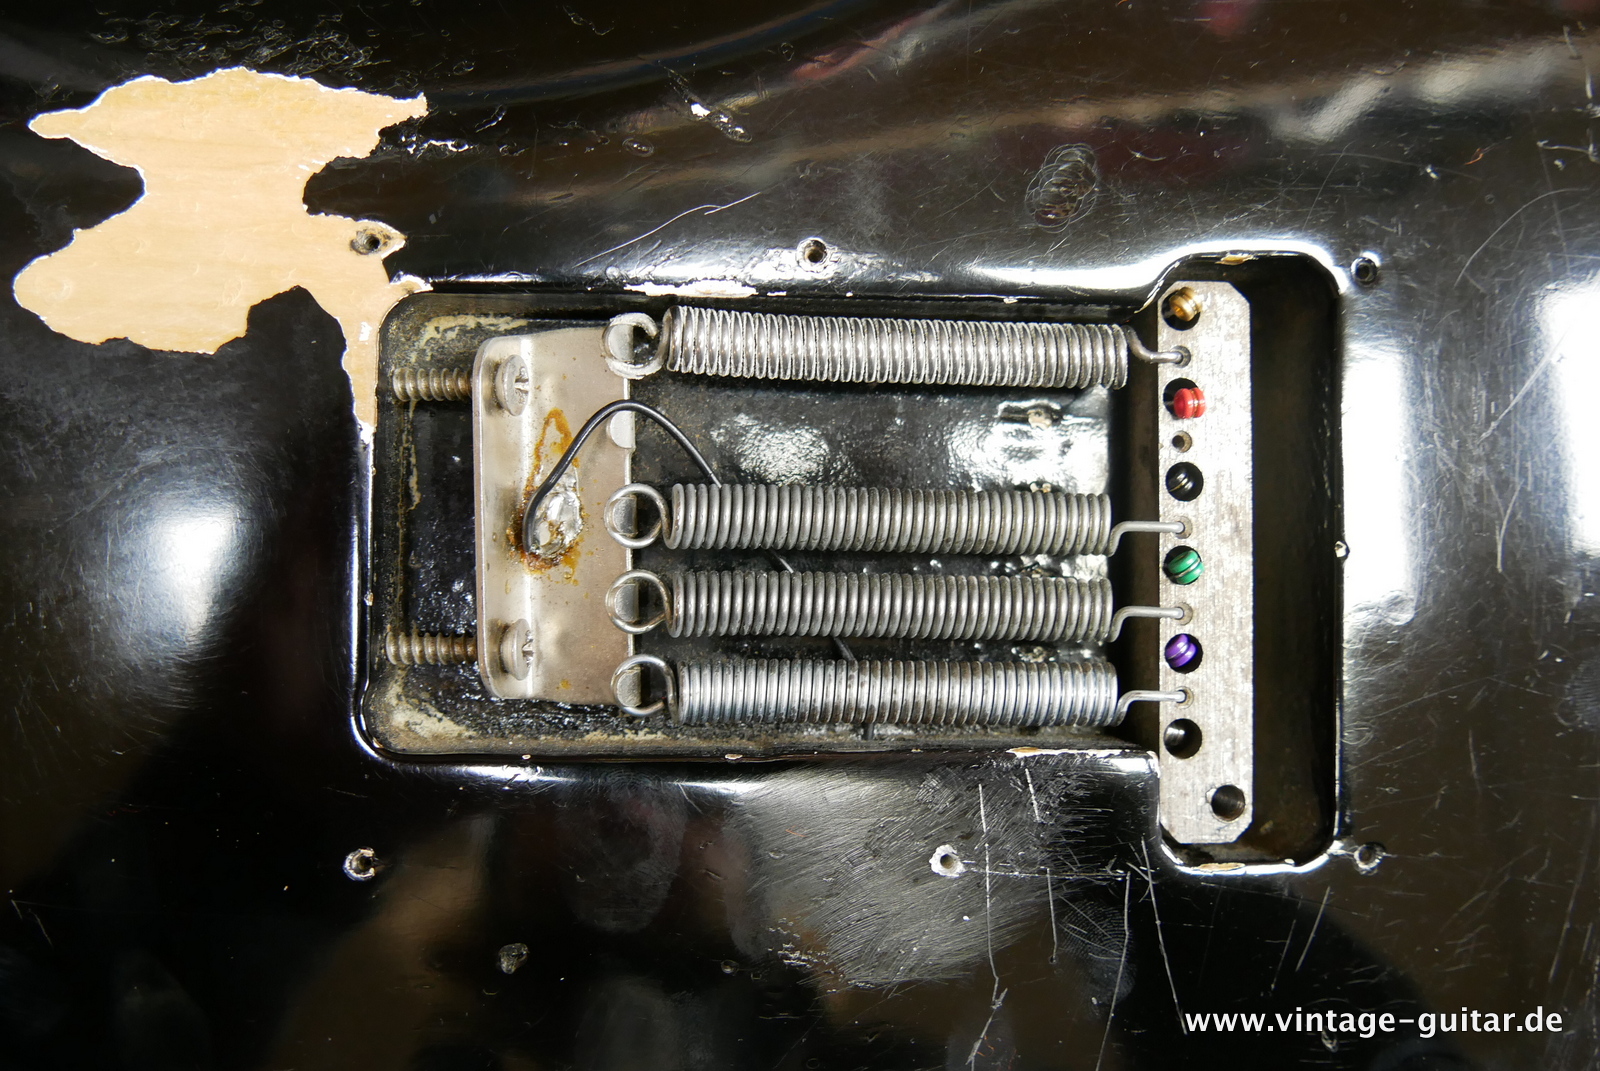 Fender-stratocaster-1969-black-034.JPG